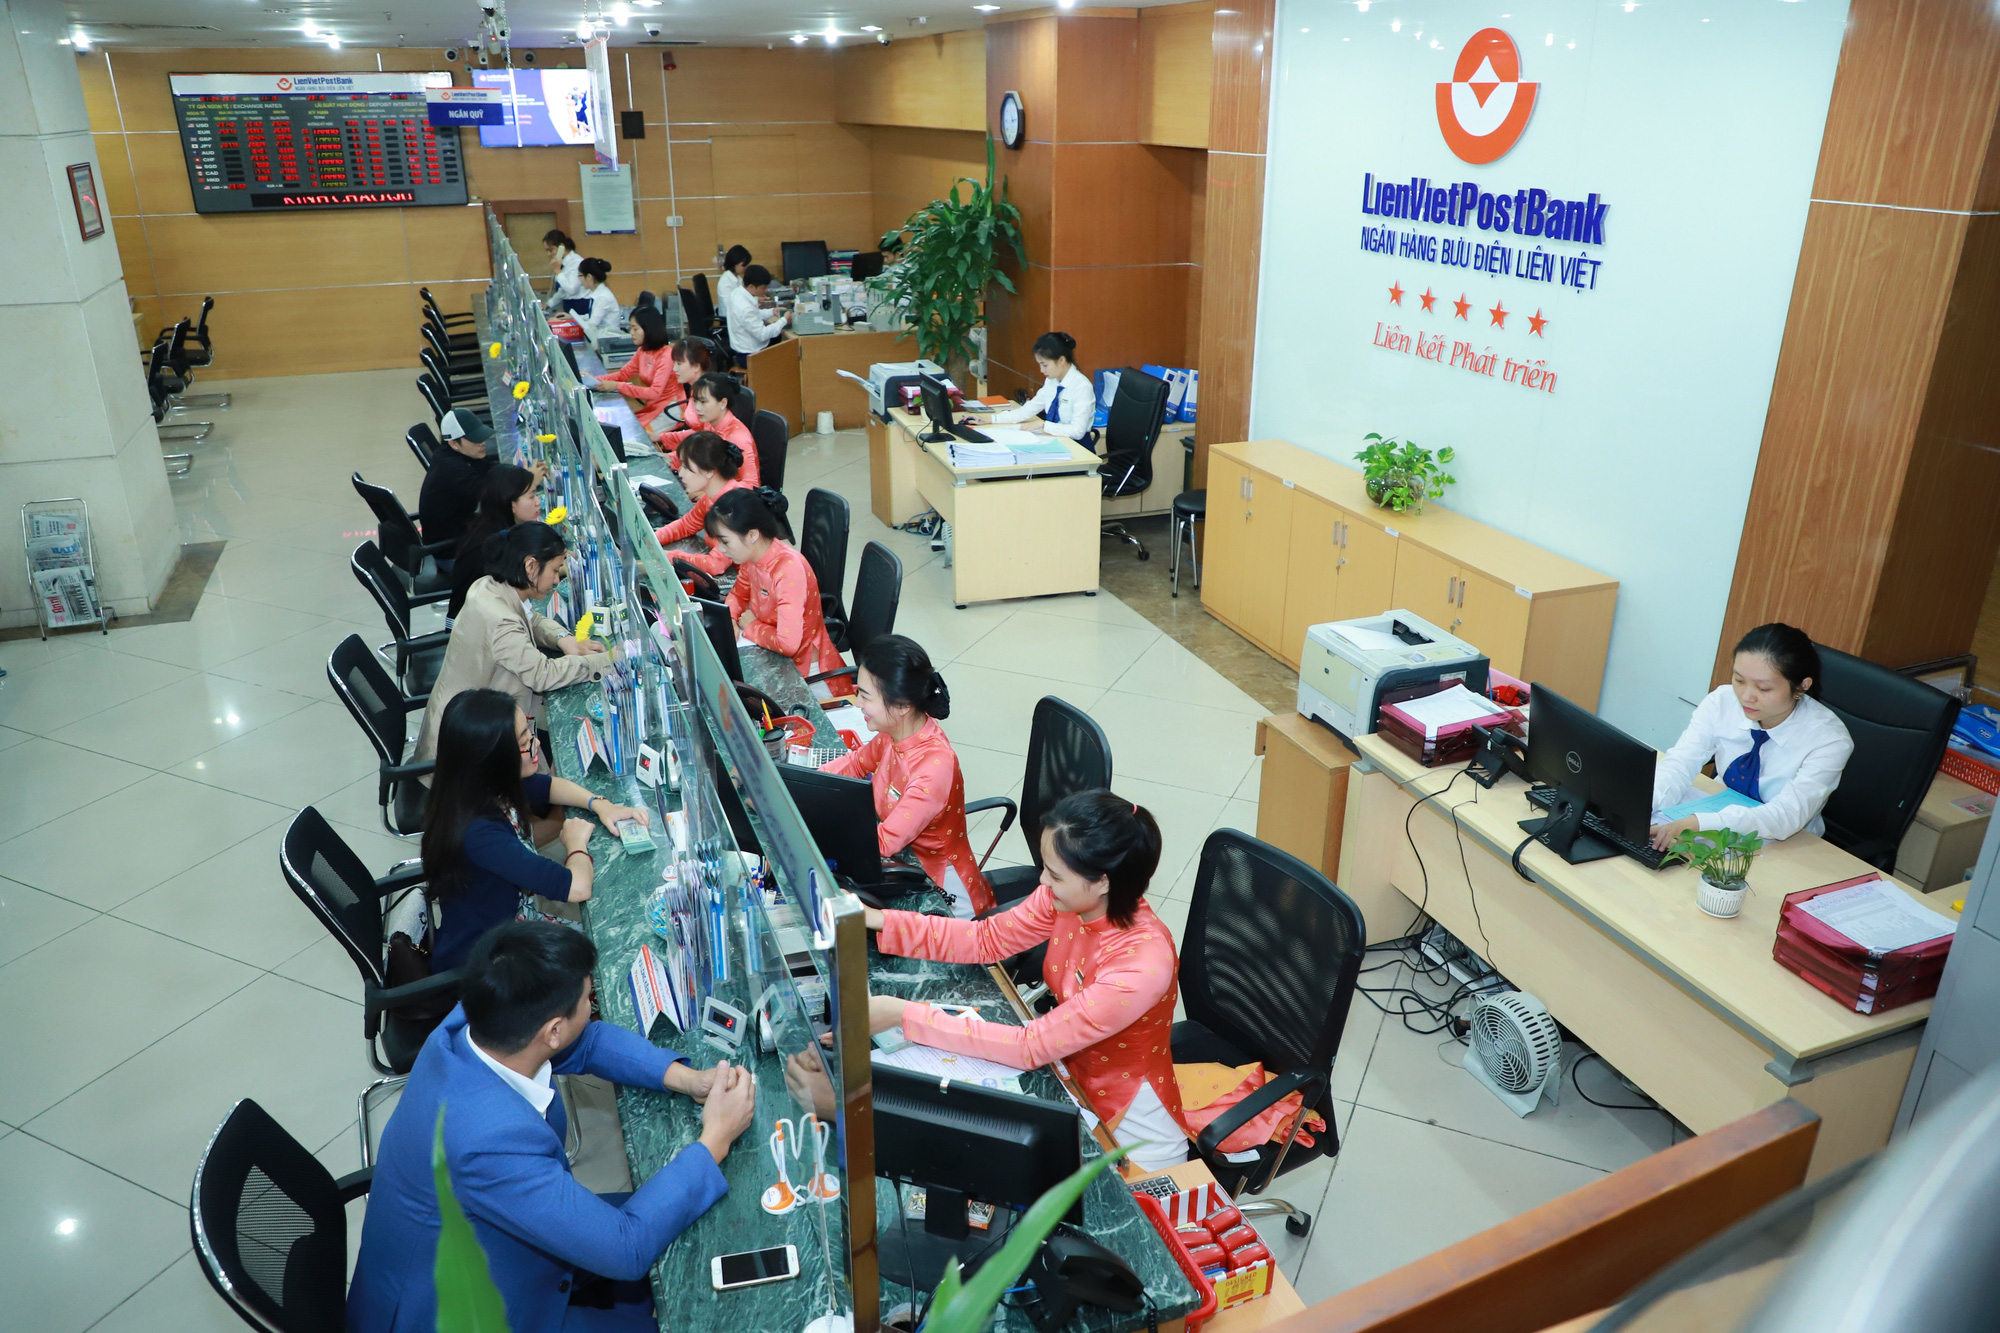 LienVietPostBank hướng tới mục tiêu trở thành Ngân hàng bán lẻ hàng đầu Việt Nam - Ảnh 1.